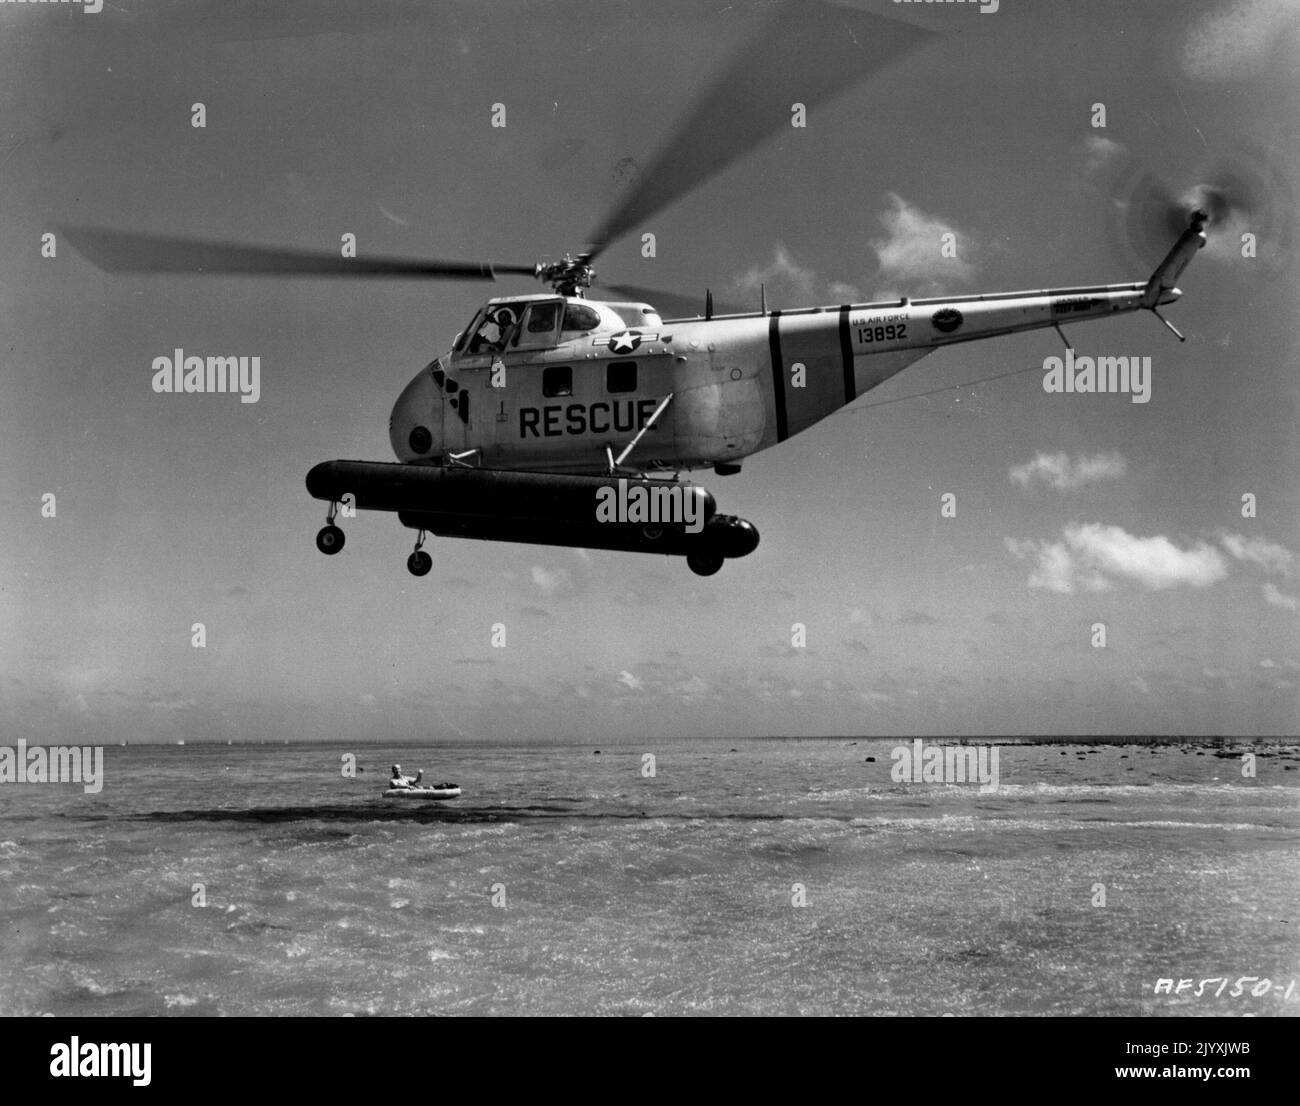 L'elicottero Okinawa simula il salvataggio in mare -- sorvolando le calme acque poco profonde al largo di Okinawa, un elicottero di salvataggio H-19 dell'aeronautica statunitense del 2nd si prepara a raccogliere una "vittima di un incidente" in un tentativo di salvataggio simulato. Il gigantesco-rotored aereo è gestito abilmente da piloti ben addestrati in tutte le operazioni di salvataggio, perché gli elicotteri sono costosi e venti difficili a basse quote potrebbe causare la perdita sia di pilota e aereo. Oltre al volo e alla manutenzione di elicotteri di tipo H-19, il 2nd Air Rescue Group, sempre in allerta per le emergenze che coinvolgono soccorsi, anche flie Foto Stock